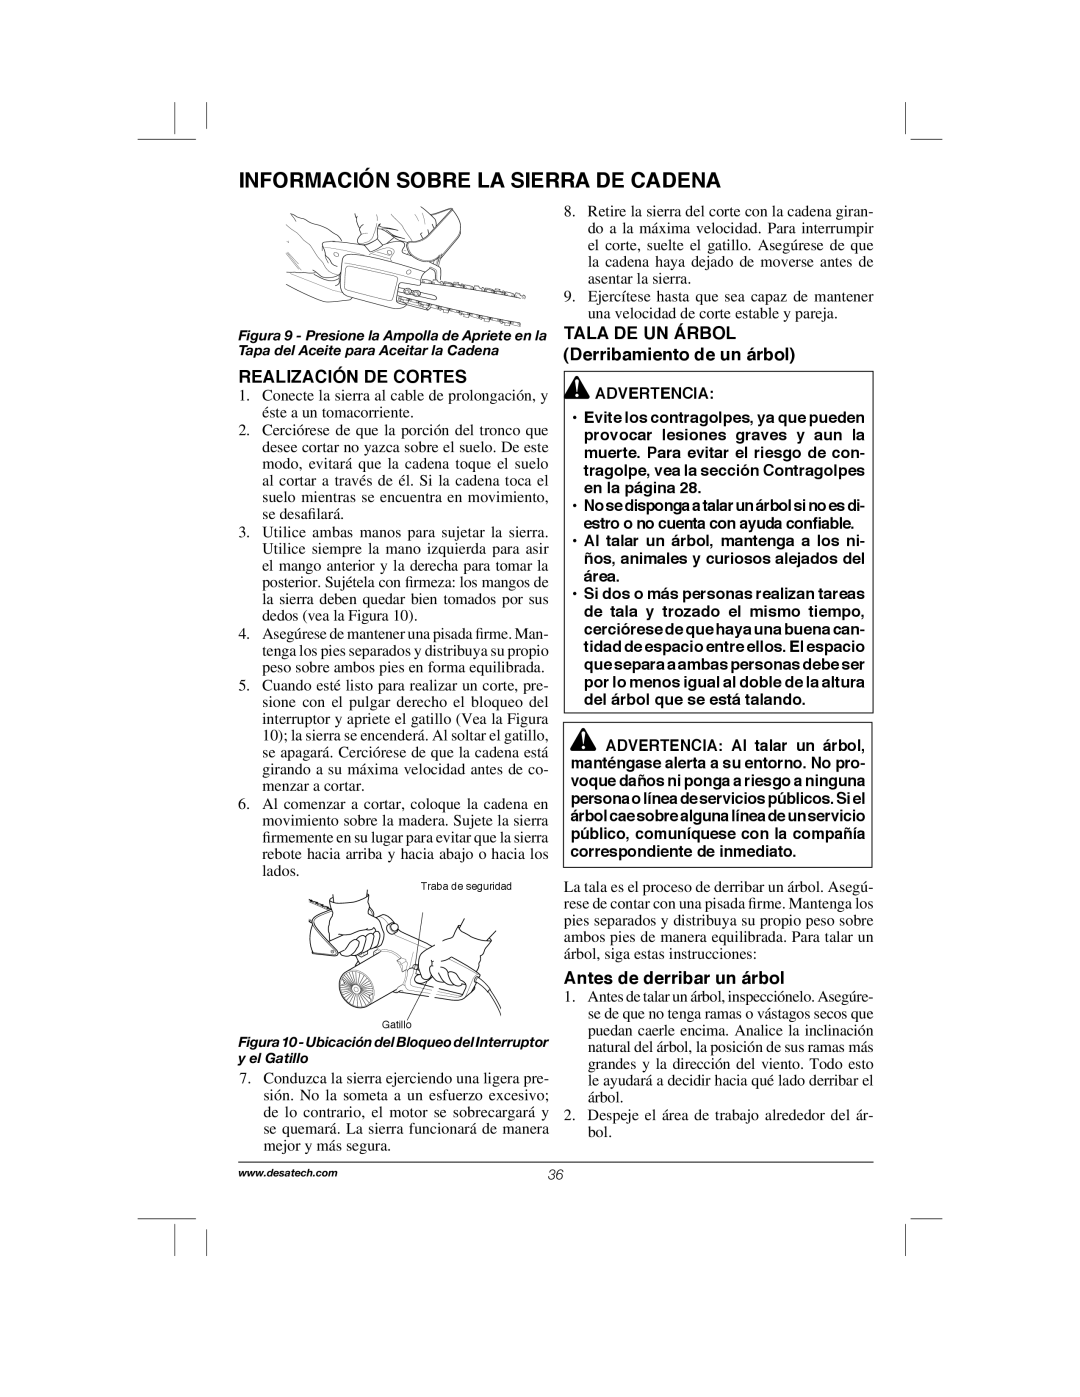 Remington Power Tools RPS2N1, 104317, PS1510A manual Información Sobre La Sierra De Cadena, Realización De Cortes 